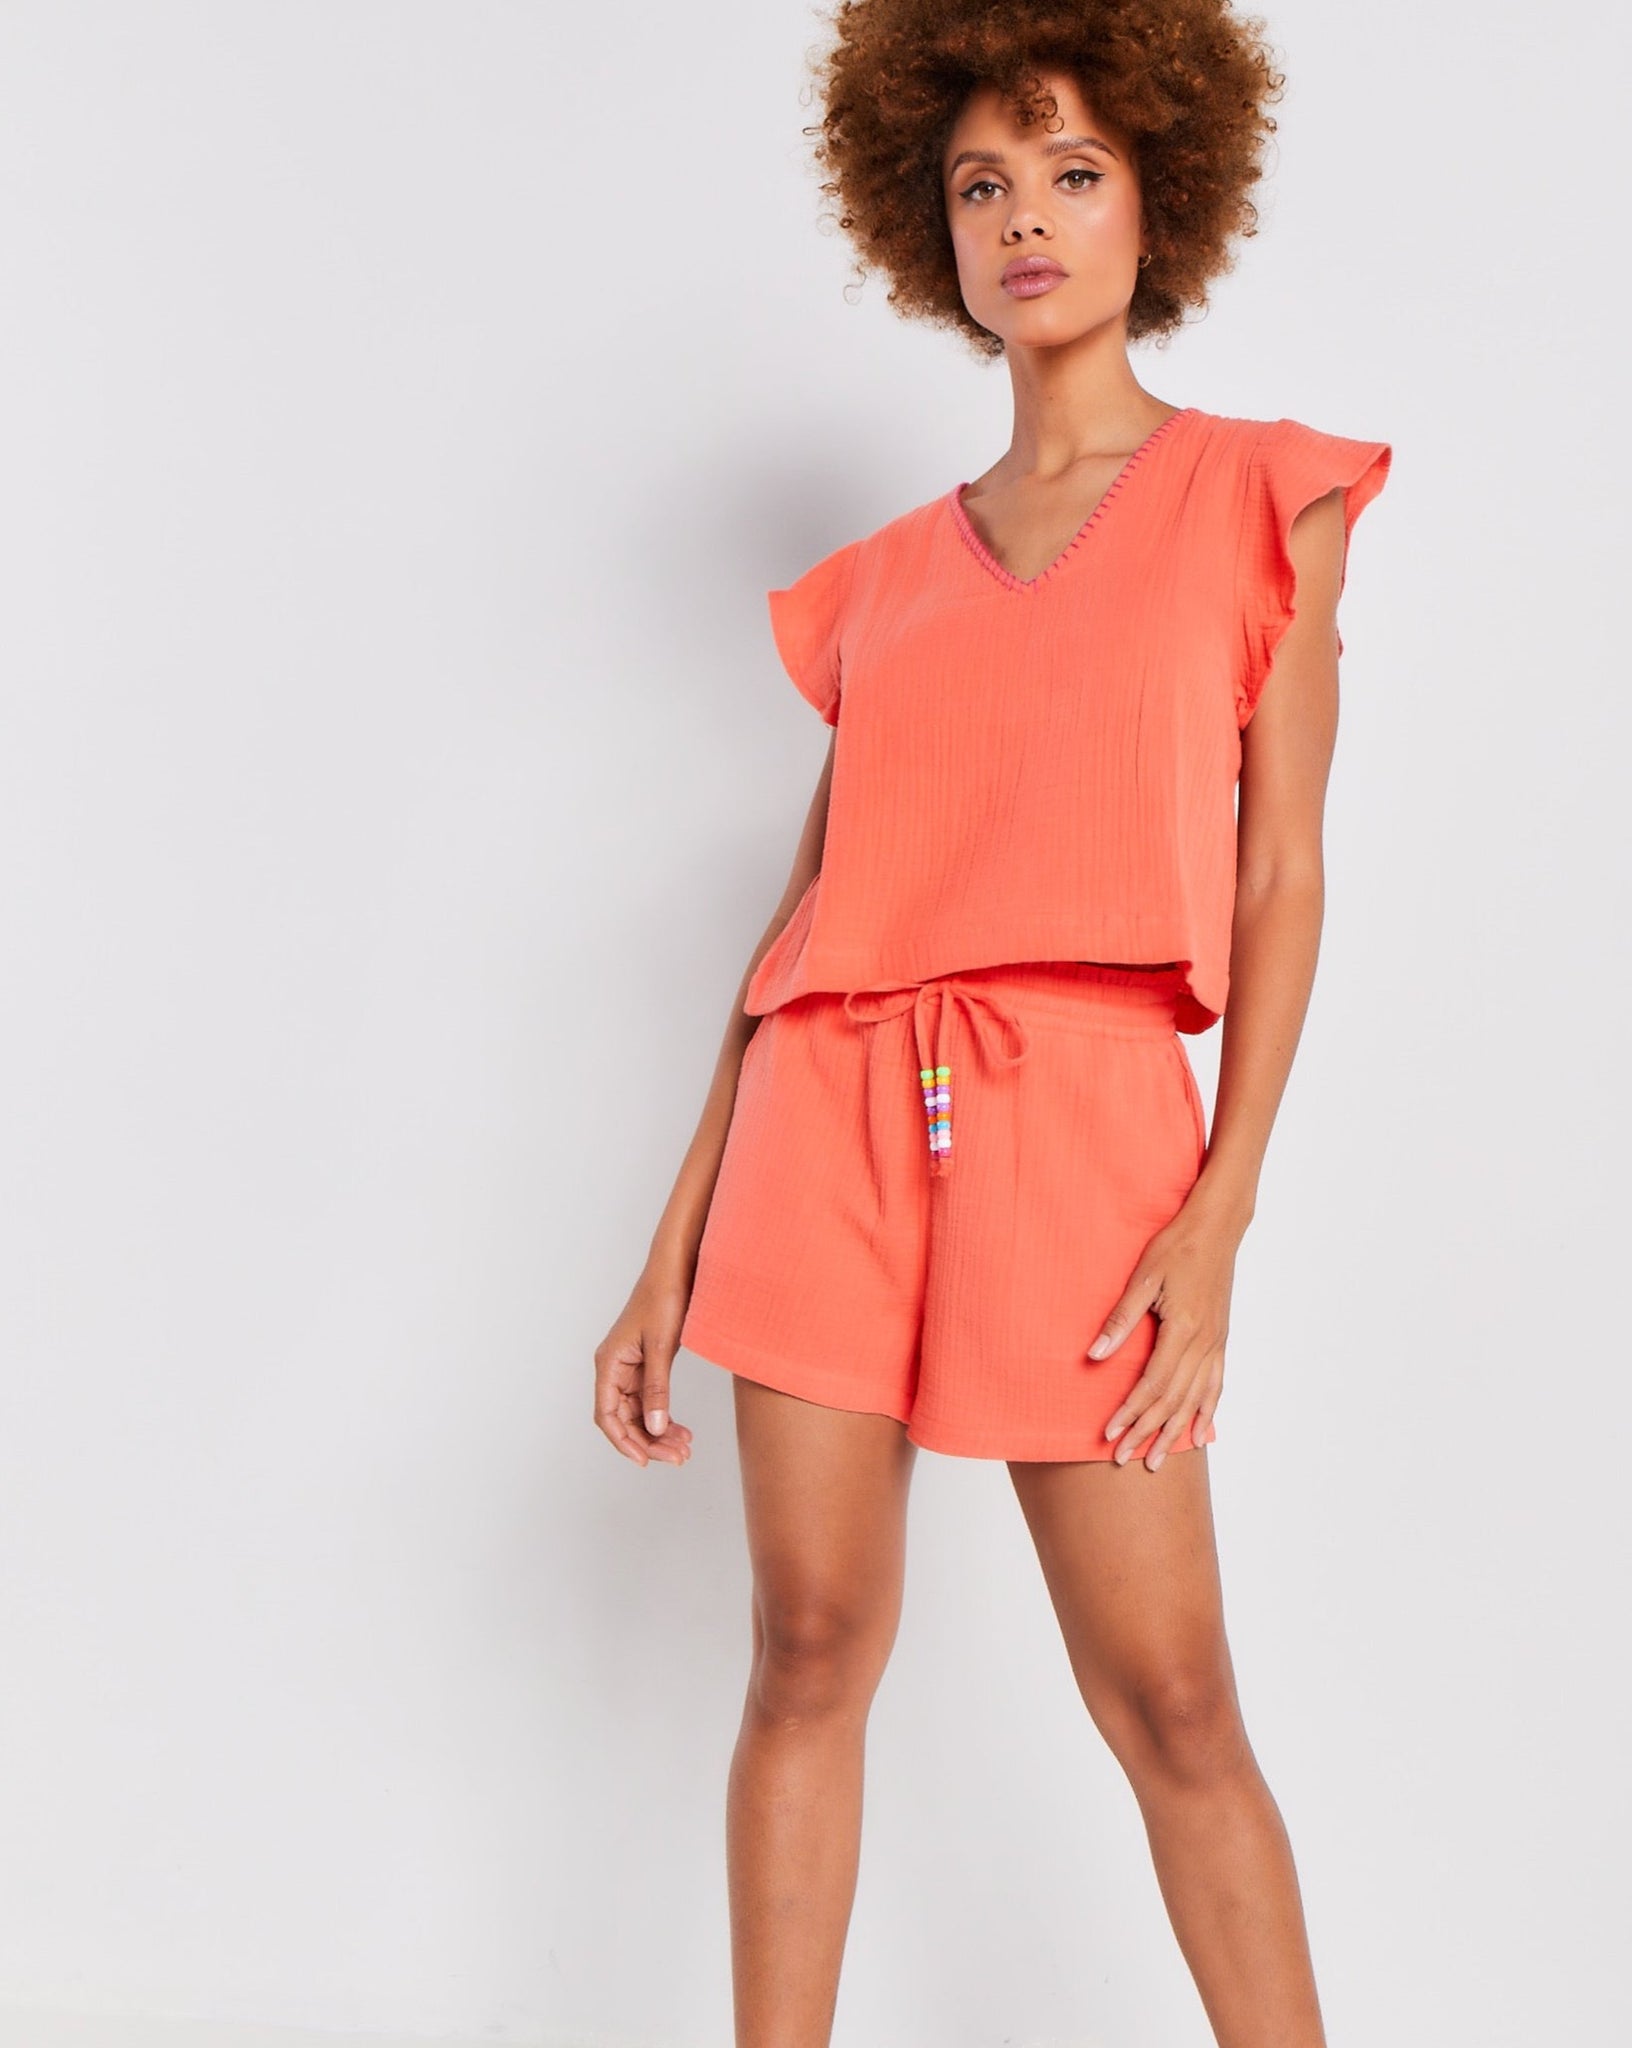 Orange cotton gauze shorts by Lisa Todd.